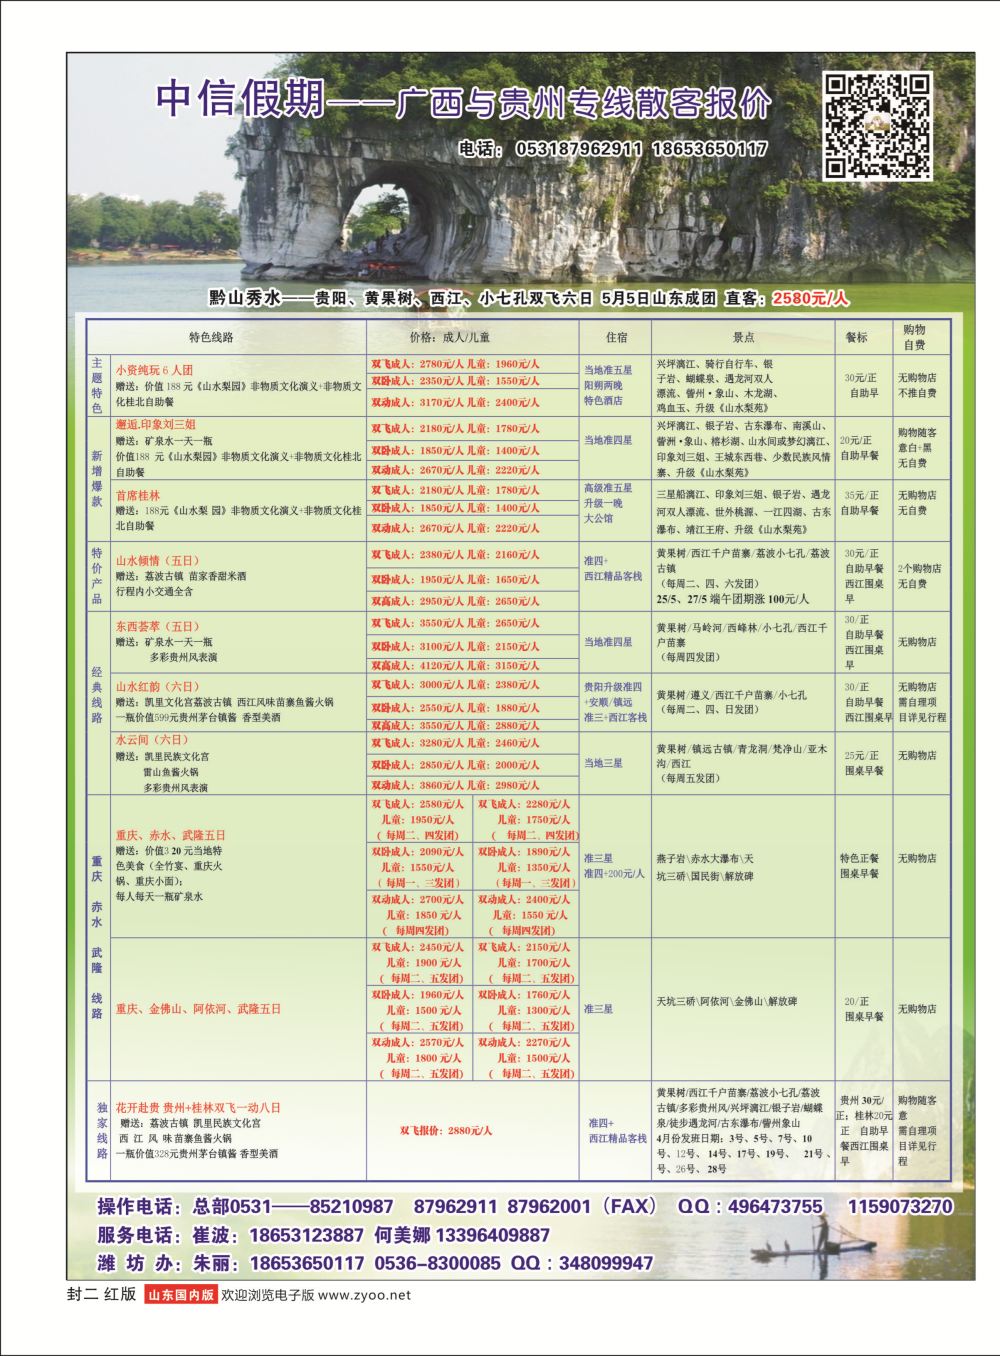 红版封二 中信假期-广西贵州专线  广西贵州专线